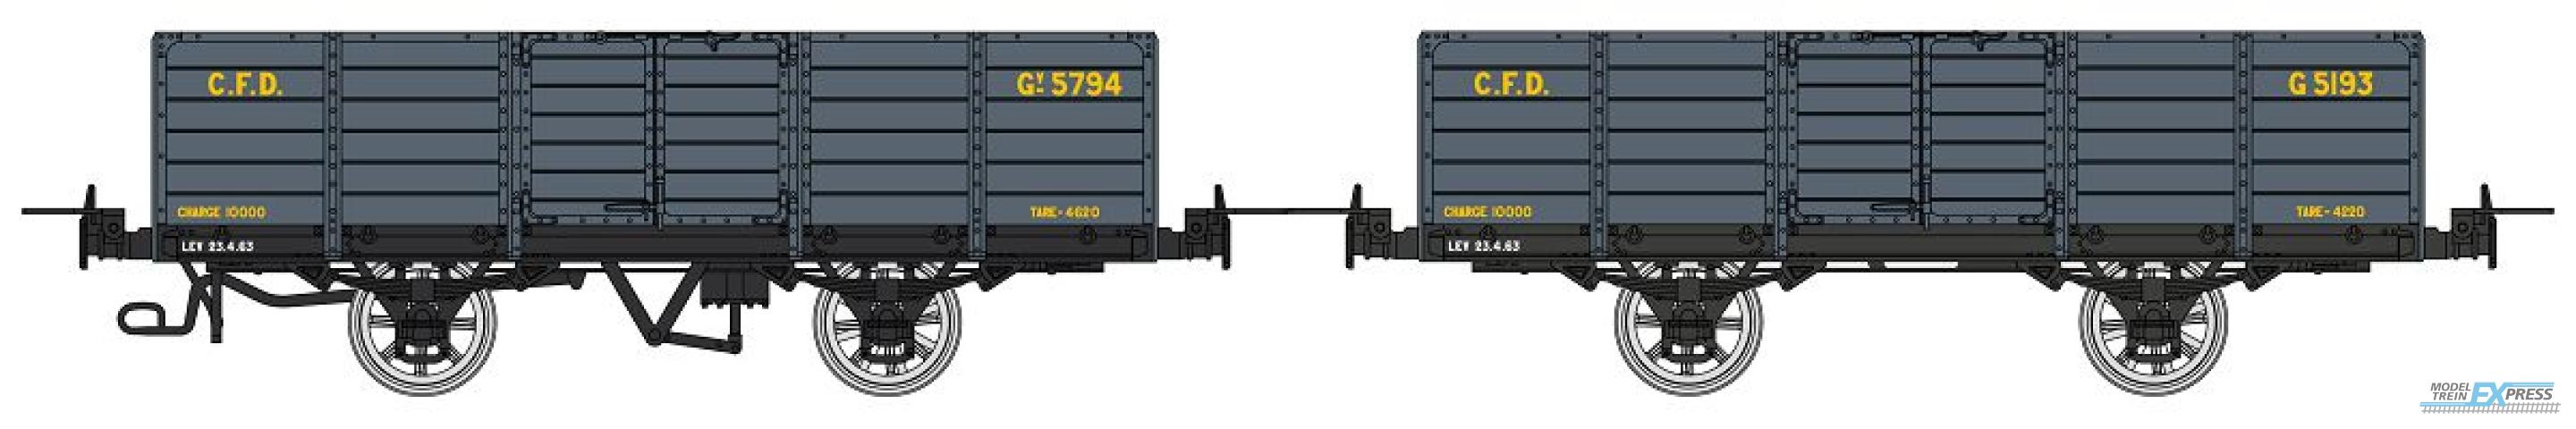 REE models VM-032 Set de 2 Gondola, Dark grey, Gv 5794 & G 5193